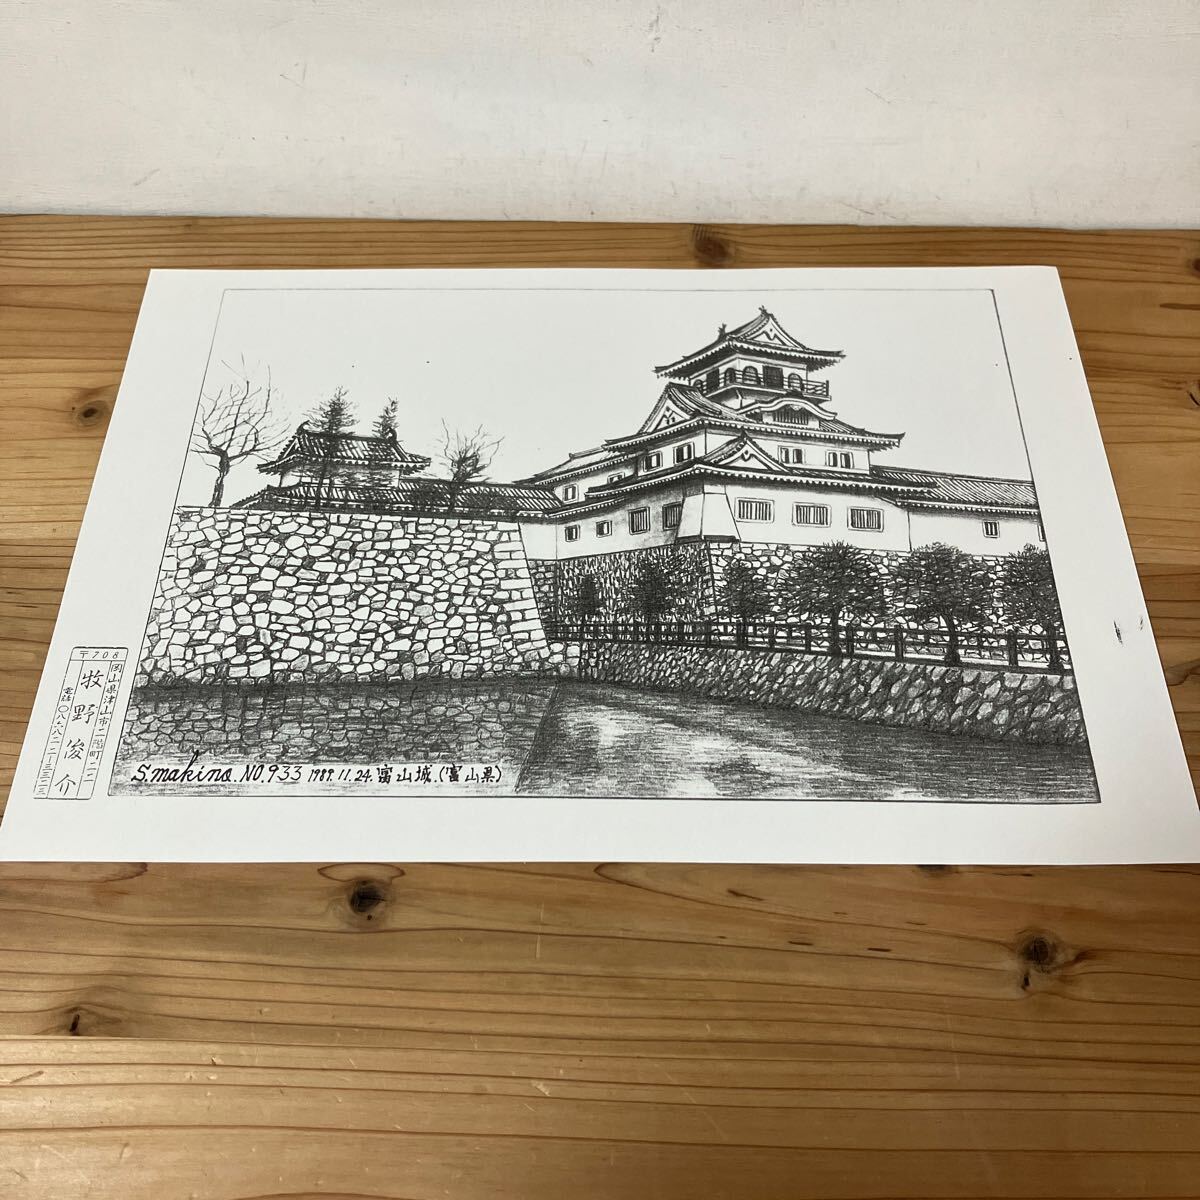 Mawo H0305 [Castillo Shunsuke Makino Toyama NO.933 Impresión de dibujo a lápiz] 1889, obra de arte, cuadro, dibujo a lápiz, dibujo al carbón